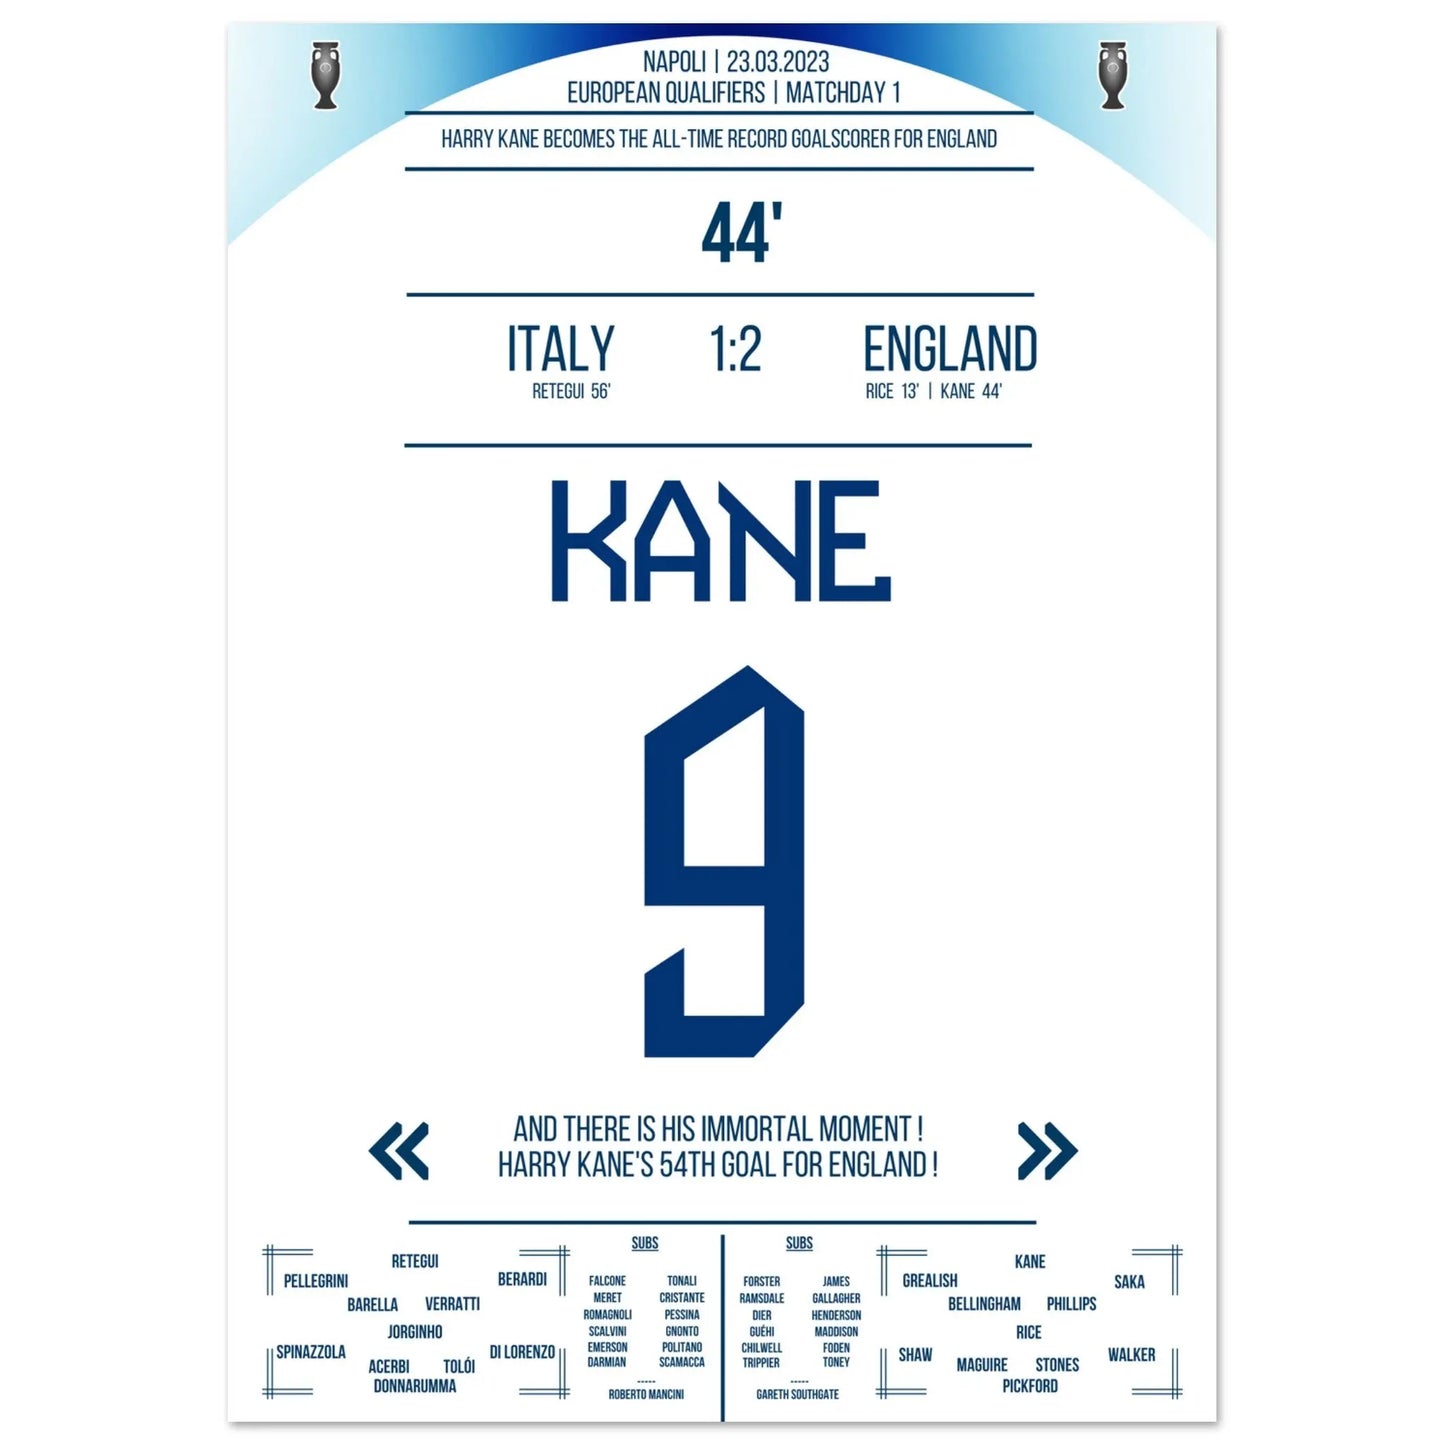 Het recorddoelpunt van Harry Kane voor Engeland